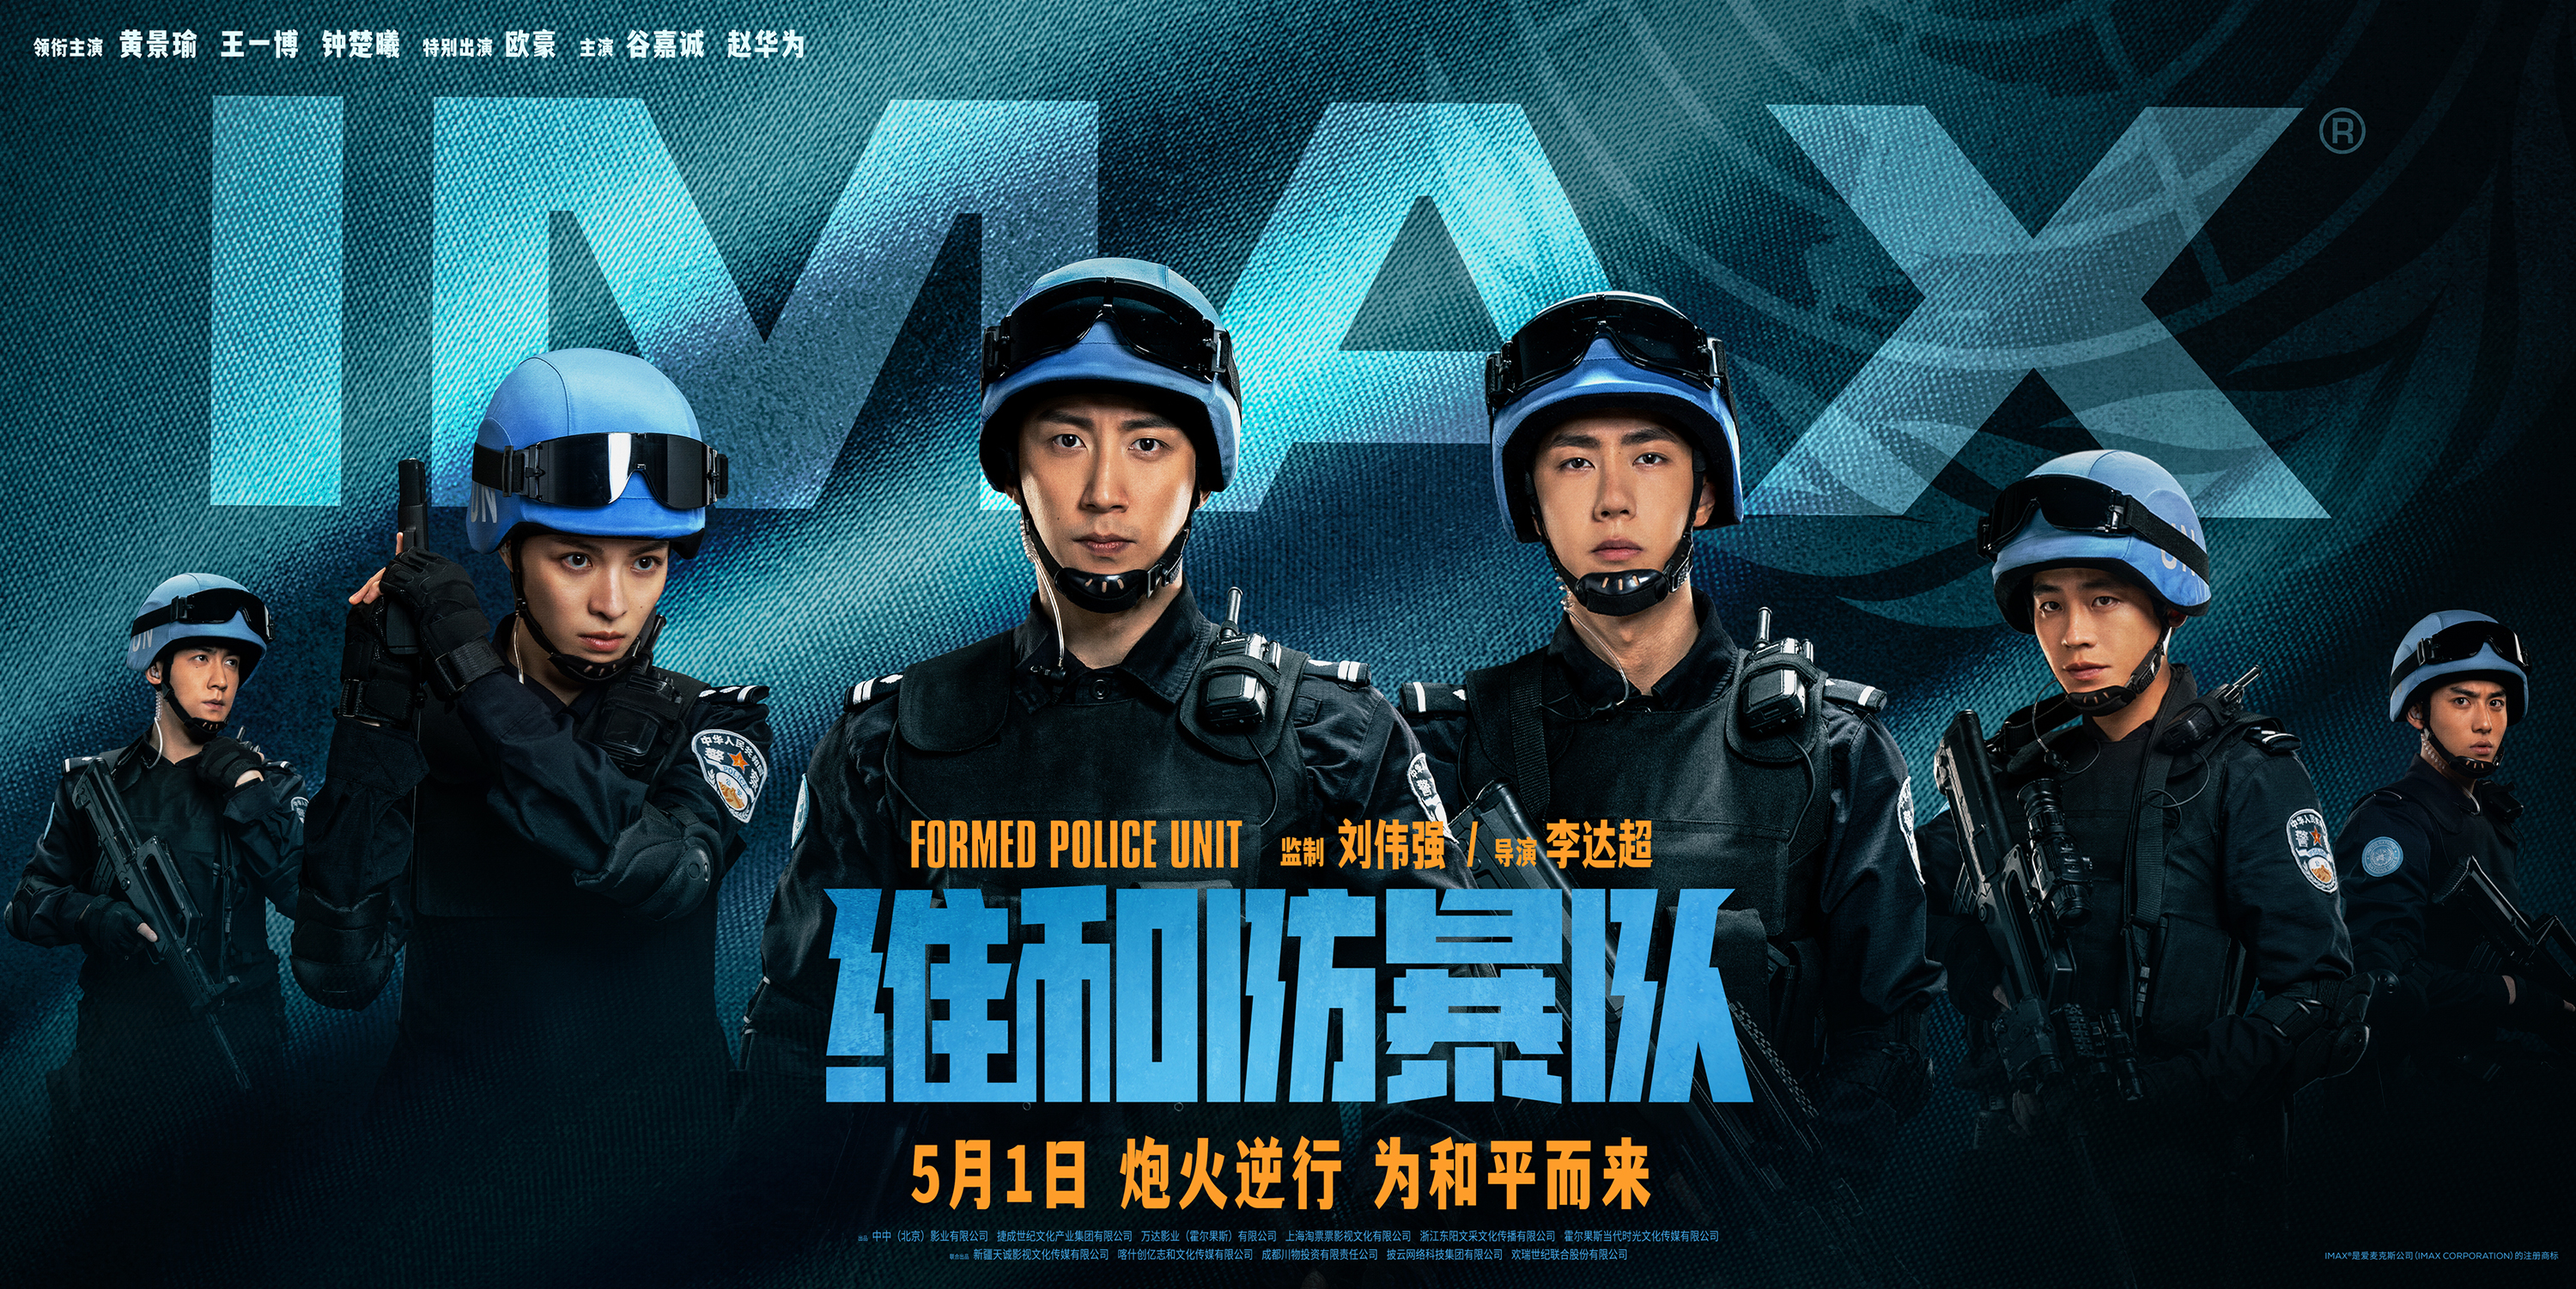 《维和防暴队》IMAX专属海报.jpg